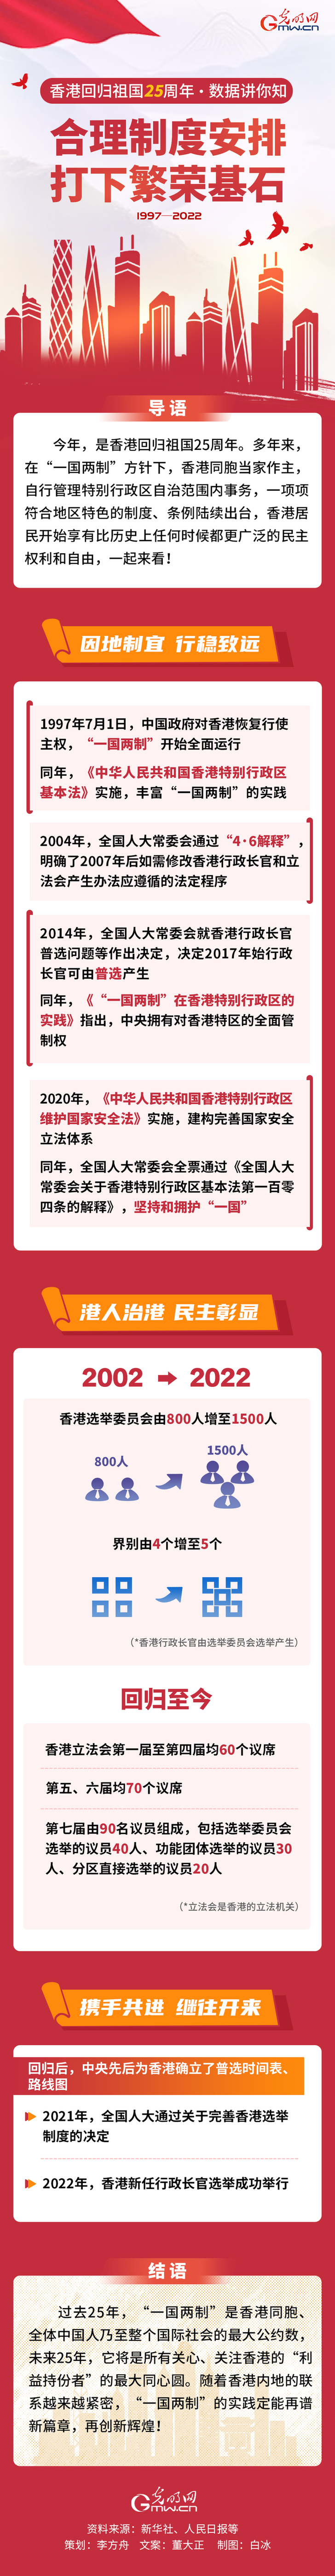 【香港回归祖国25周年·数据讲你知】合理制度安排 打下繁荣基石